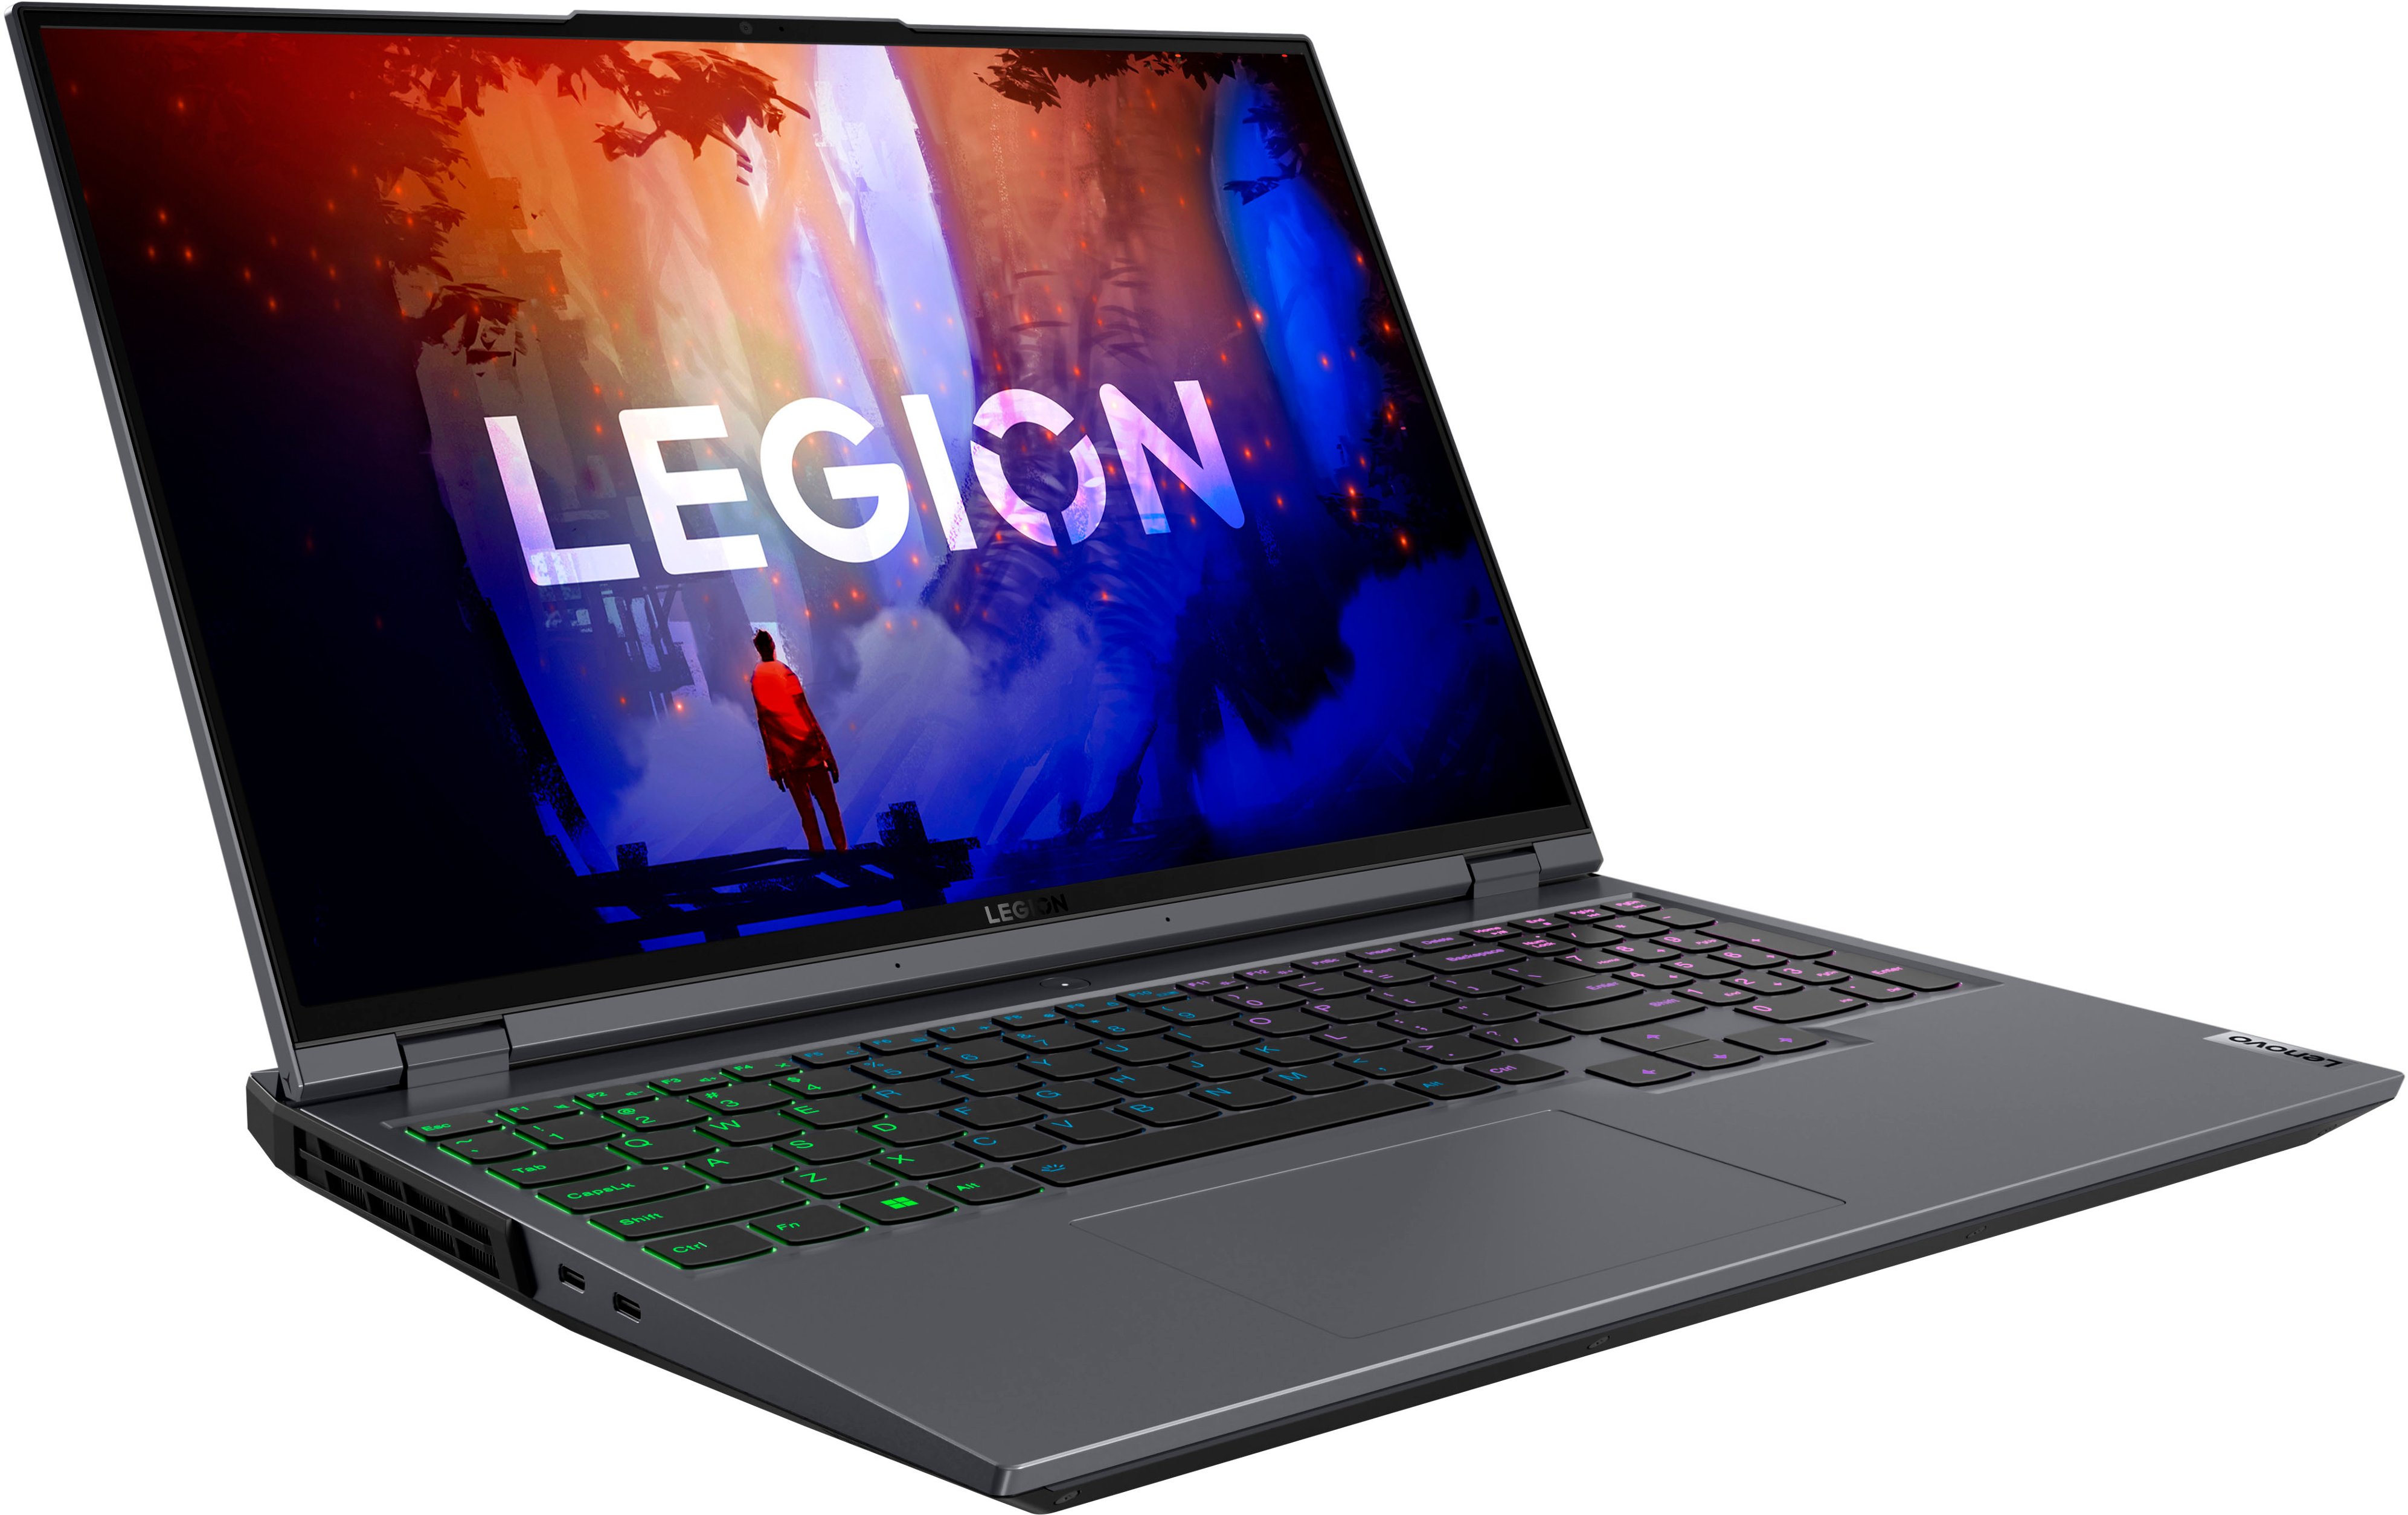 Lenovo Legion 5 Pro review: Bargain for hardcore gamers